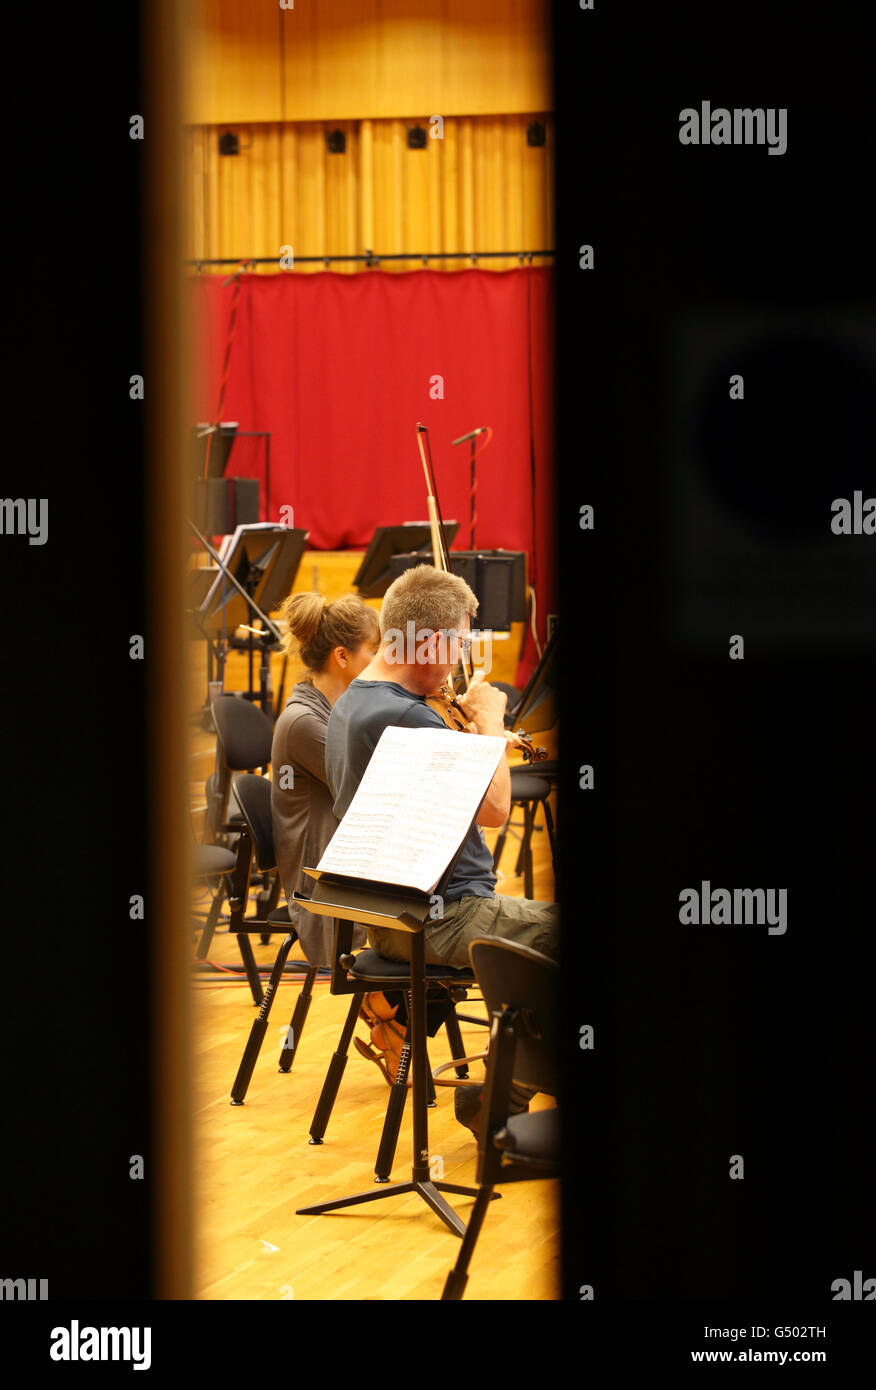 L'enregistrement en studio des musiciens à un enregistrement live, l'enregistrement en studio de musique. Violonistes. Banque D'Images